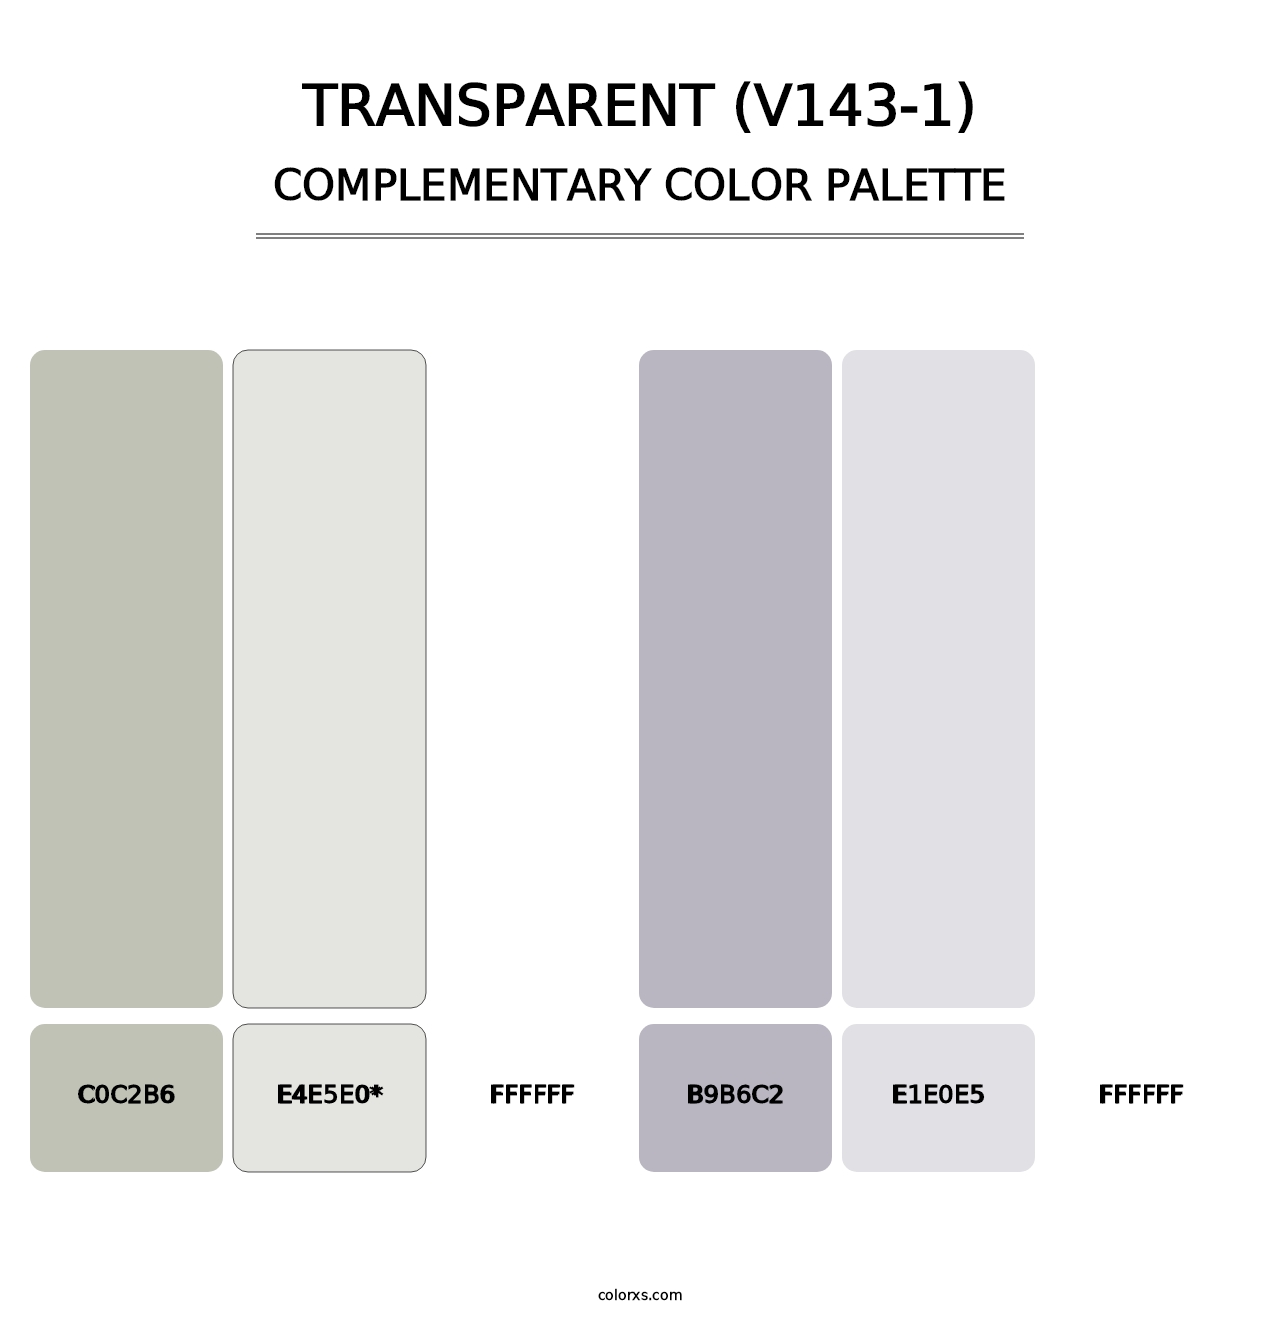 Transparent (V143-1) - Complementary Color Palette